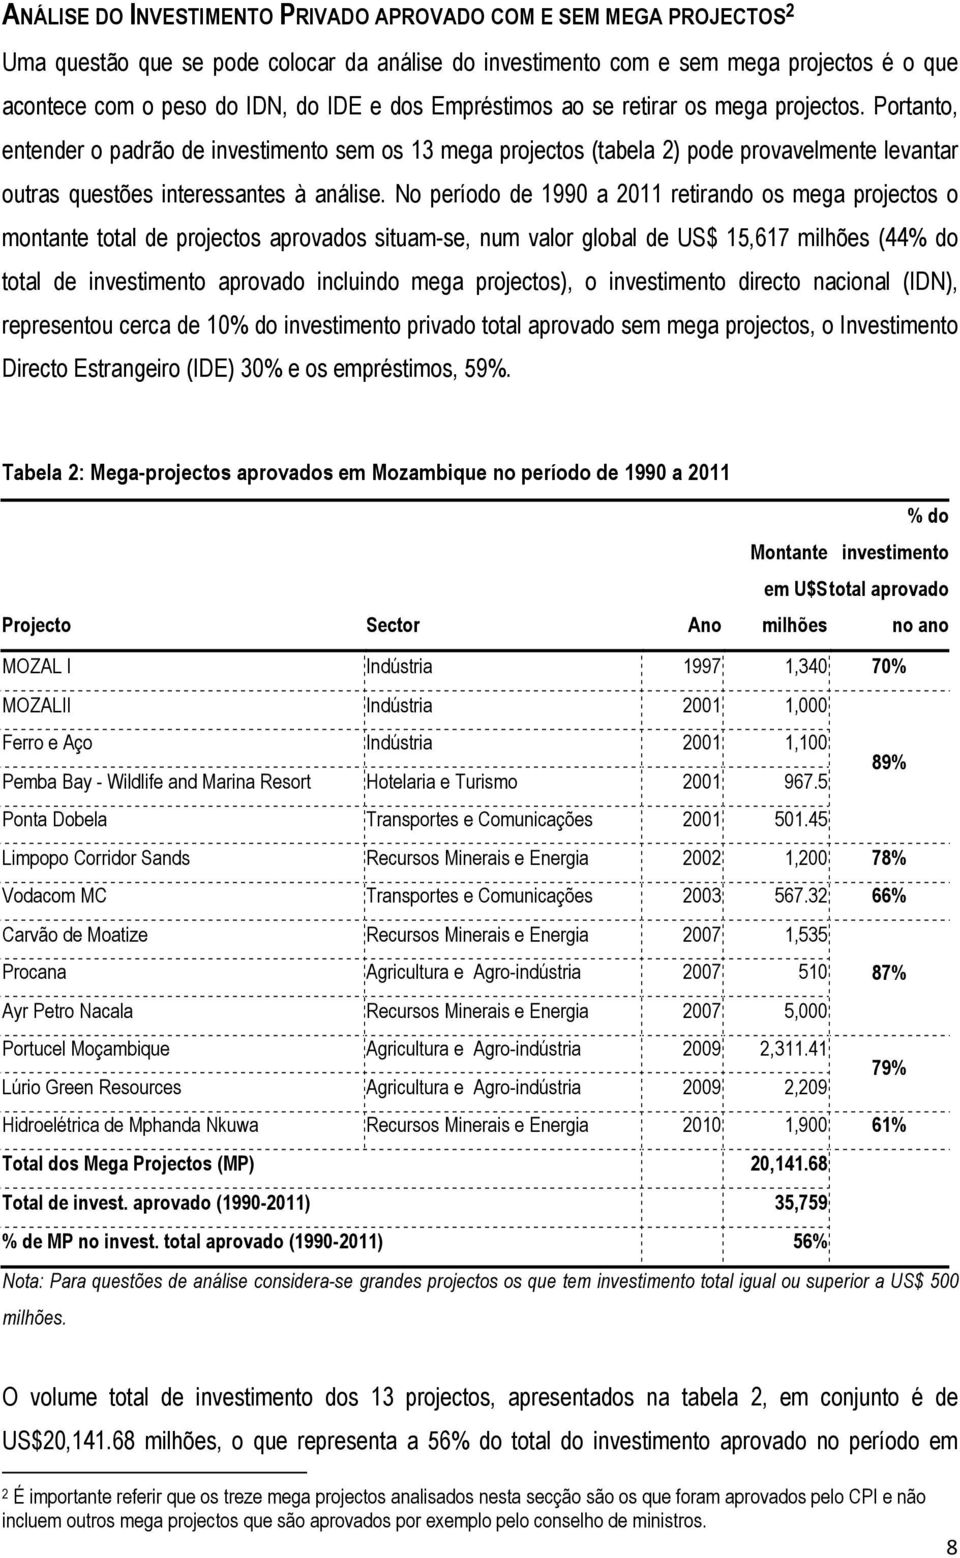 No período de 1990 a 2011 retirando os mega projectos o montante total de projectos aprovados situam-se, num valor global de US$ 15,617 milhões (44% do total de investimento aprovado incluindo mega